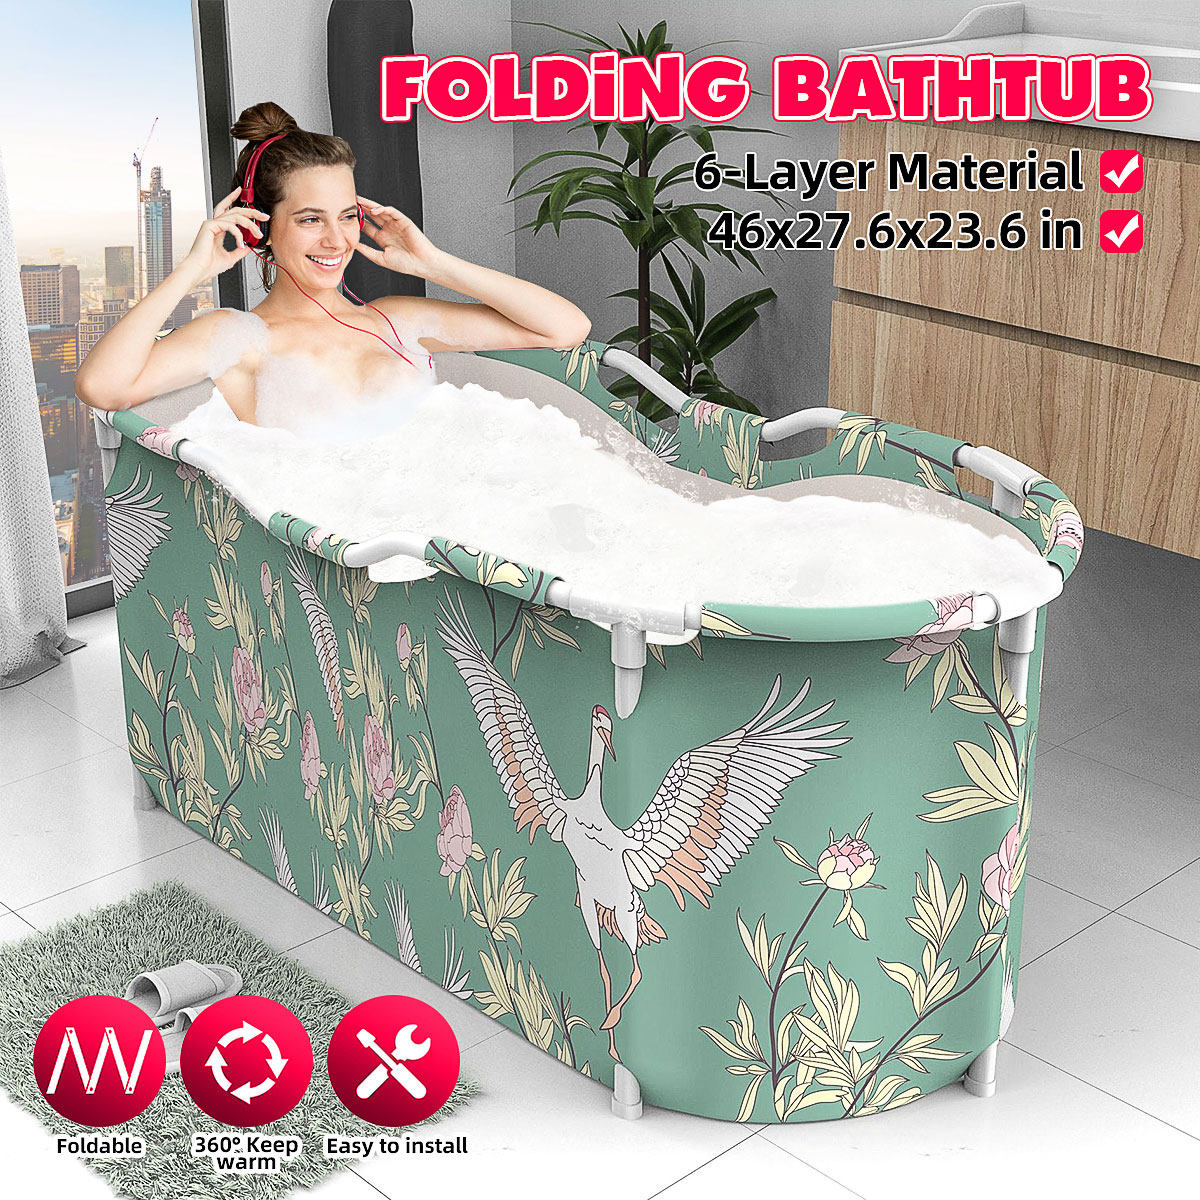 46x27.6x23.6 inch Portable Bathtub Folding Water Tub Indoor Outdoor Room Adult Spa Foldable Bath Bucket 1